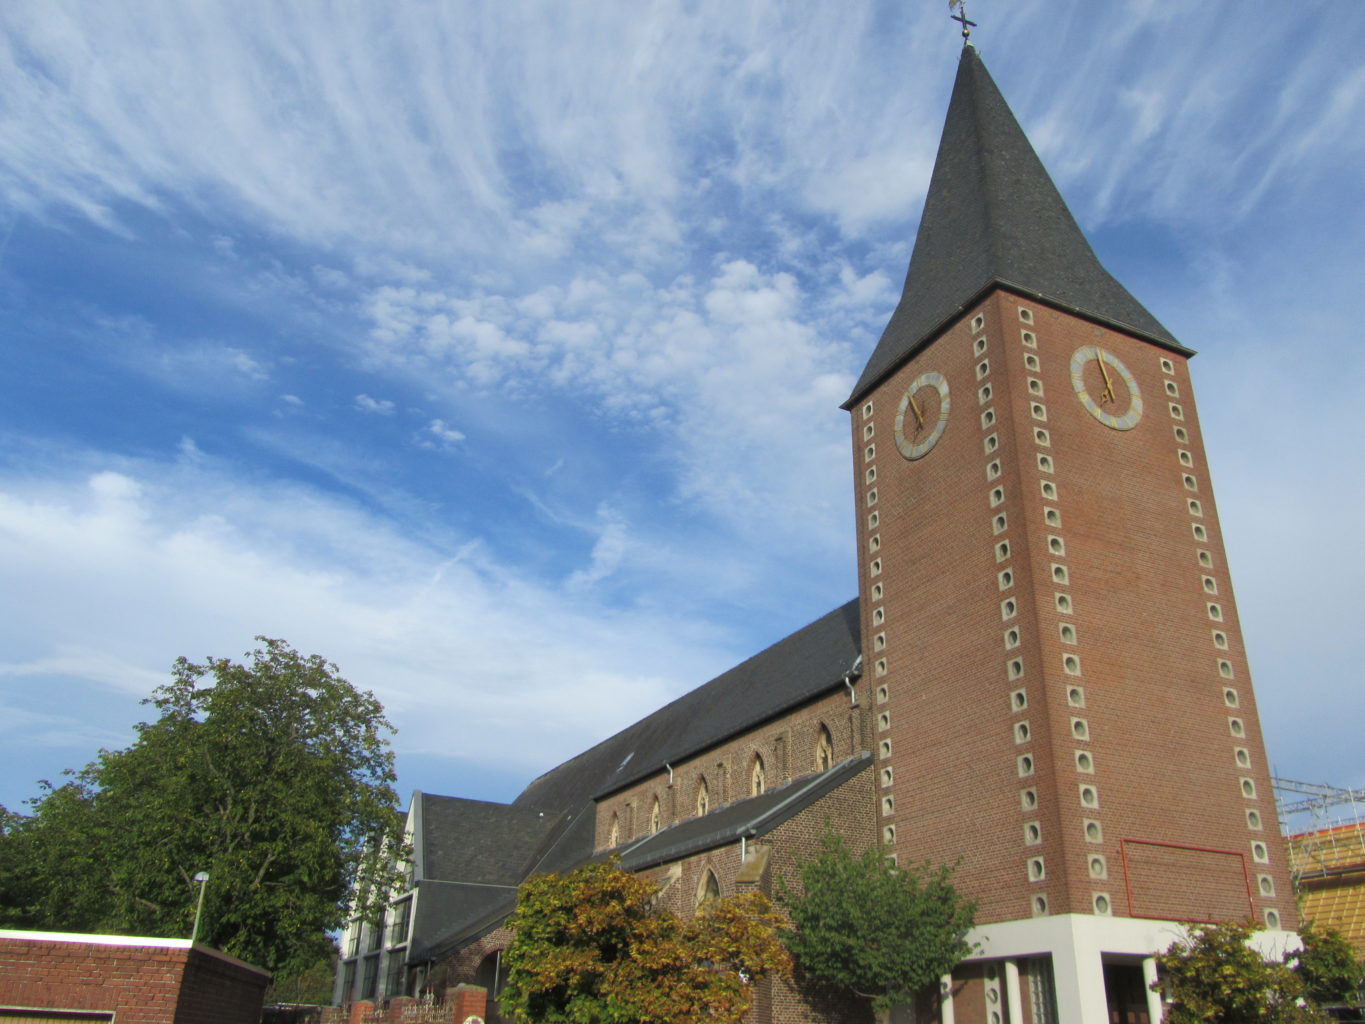 Kirche St. Peter im Stadtteil Birkesdorf